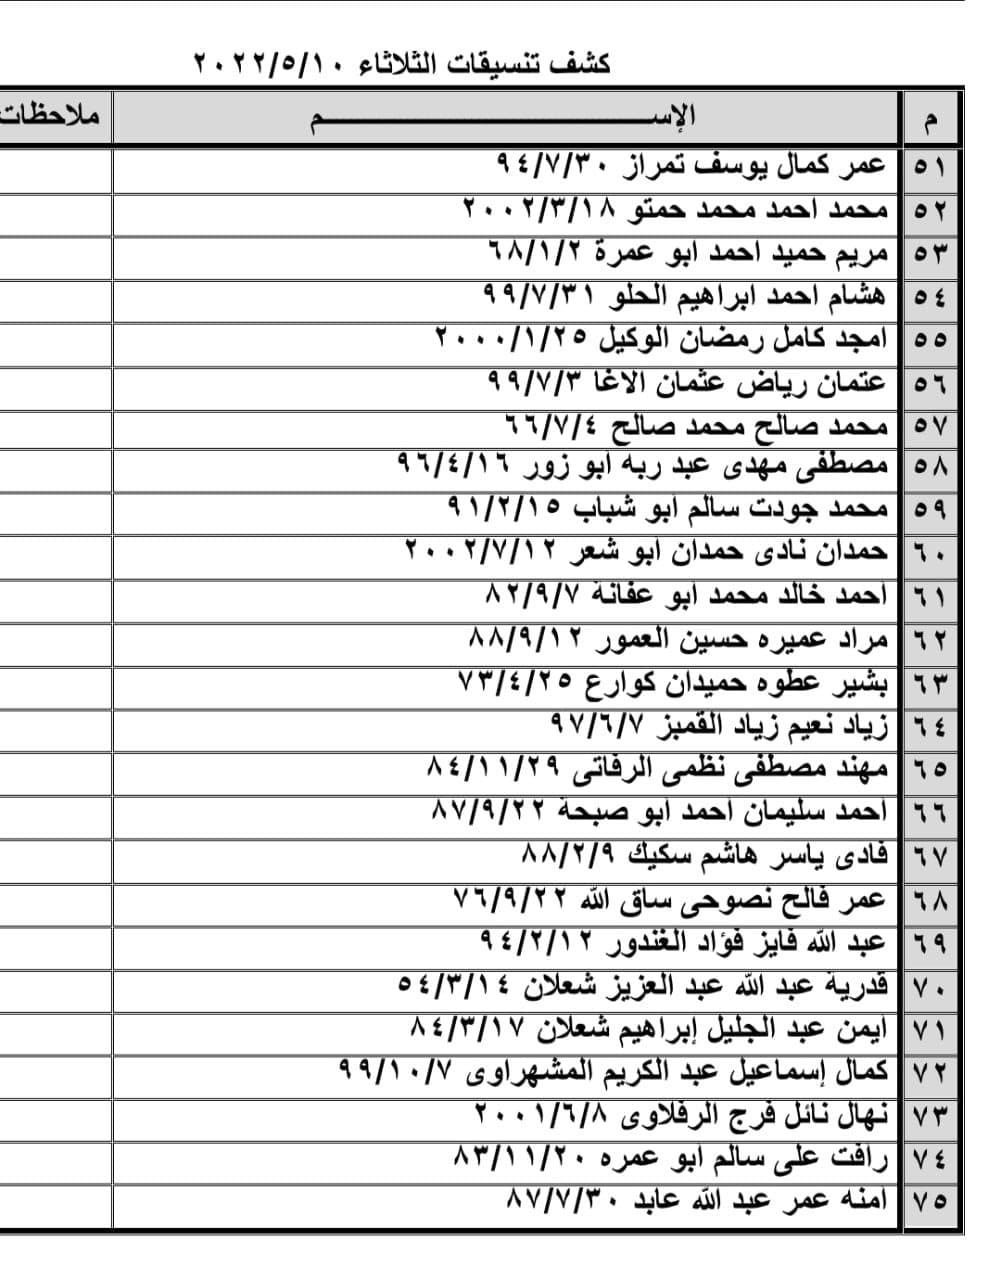 بالأسماء: كشف "تنسيقات مصرية" للسفر عبر معبر رفح يوم الثلاثاء 10 مايو